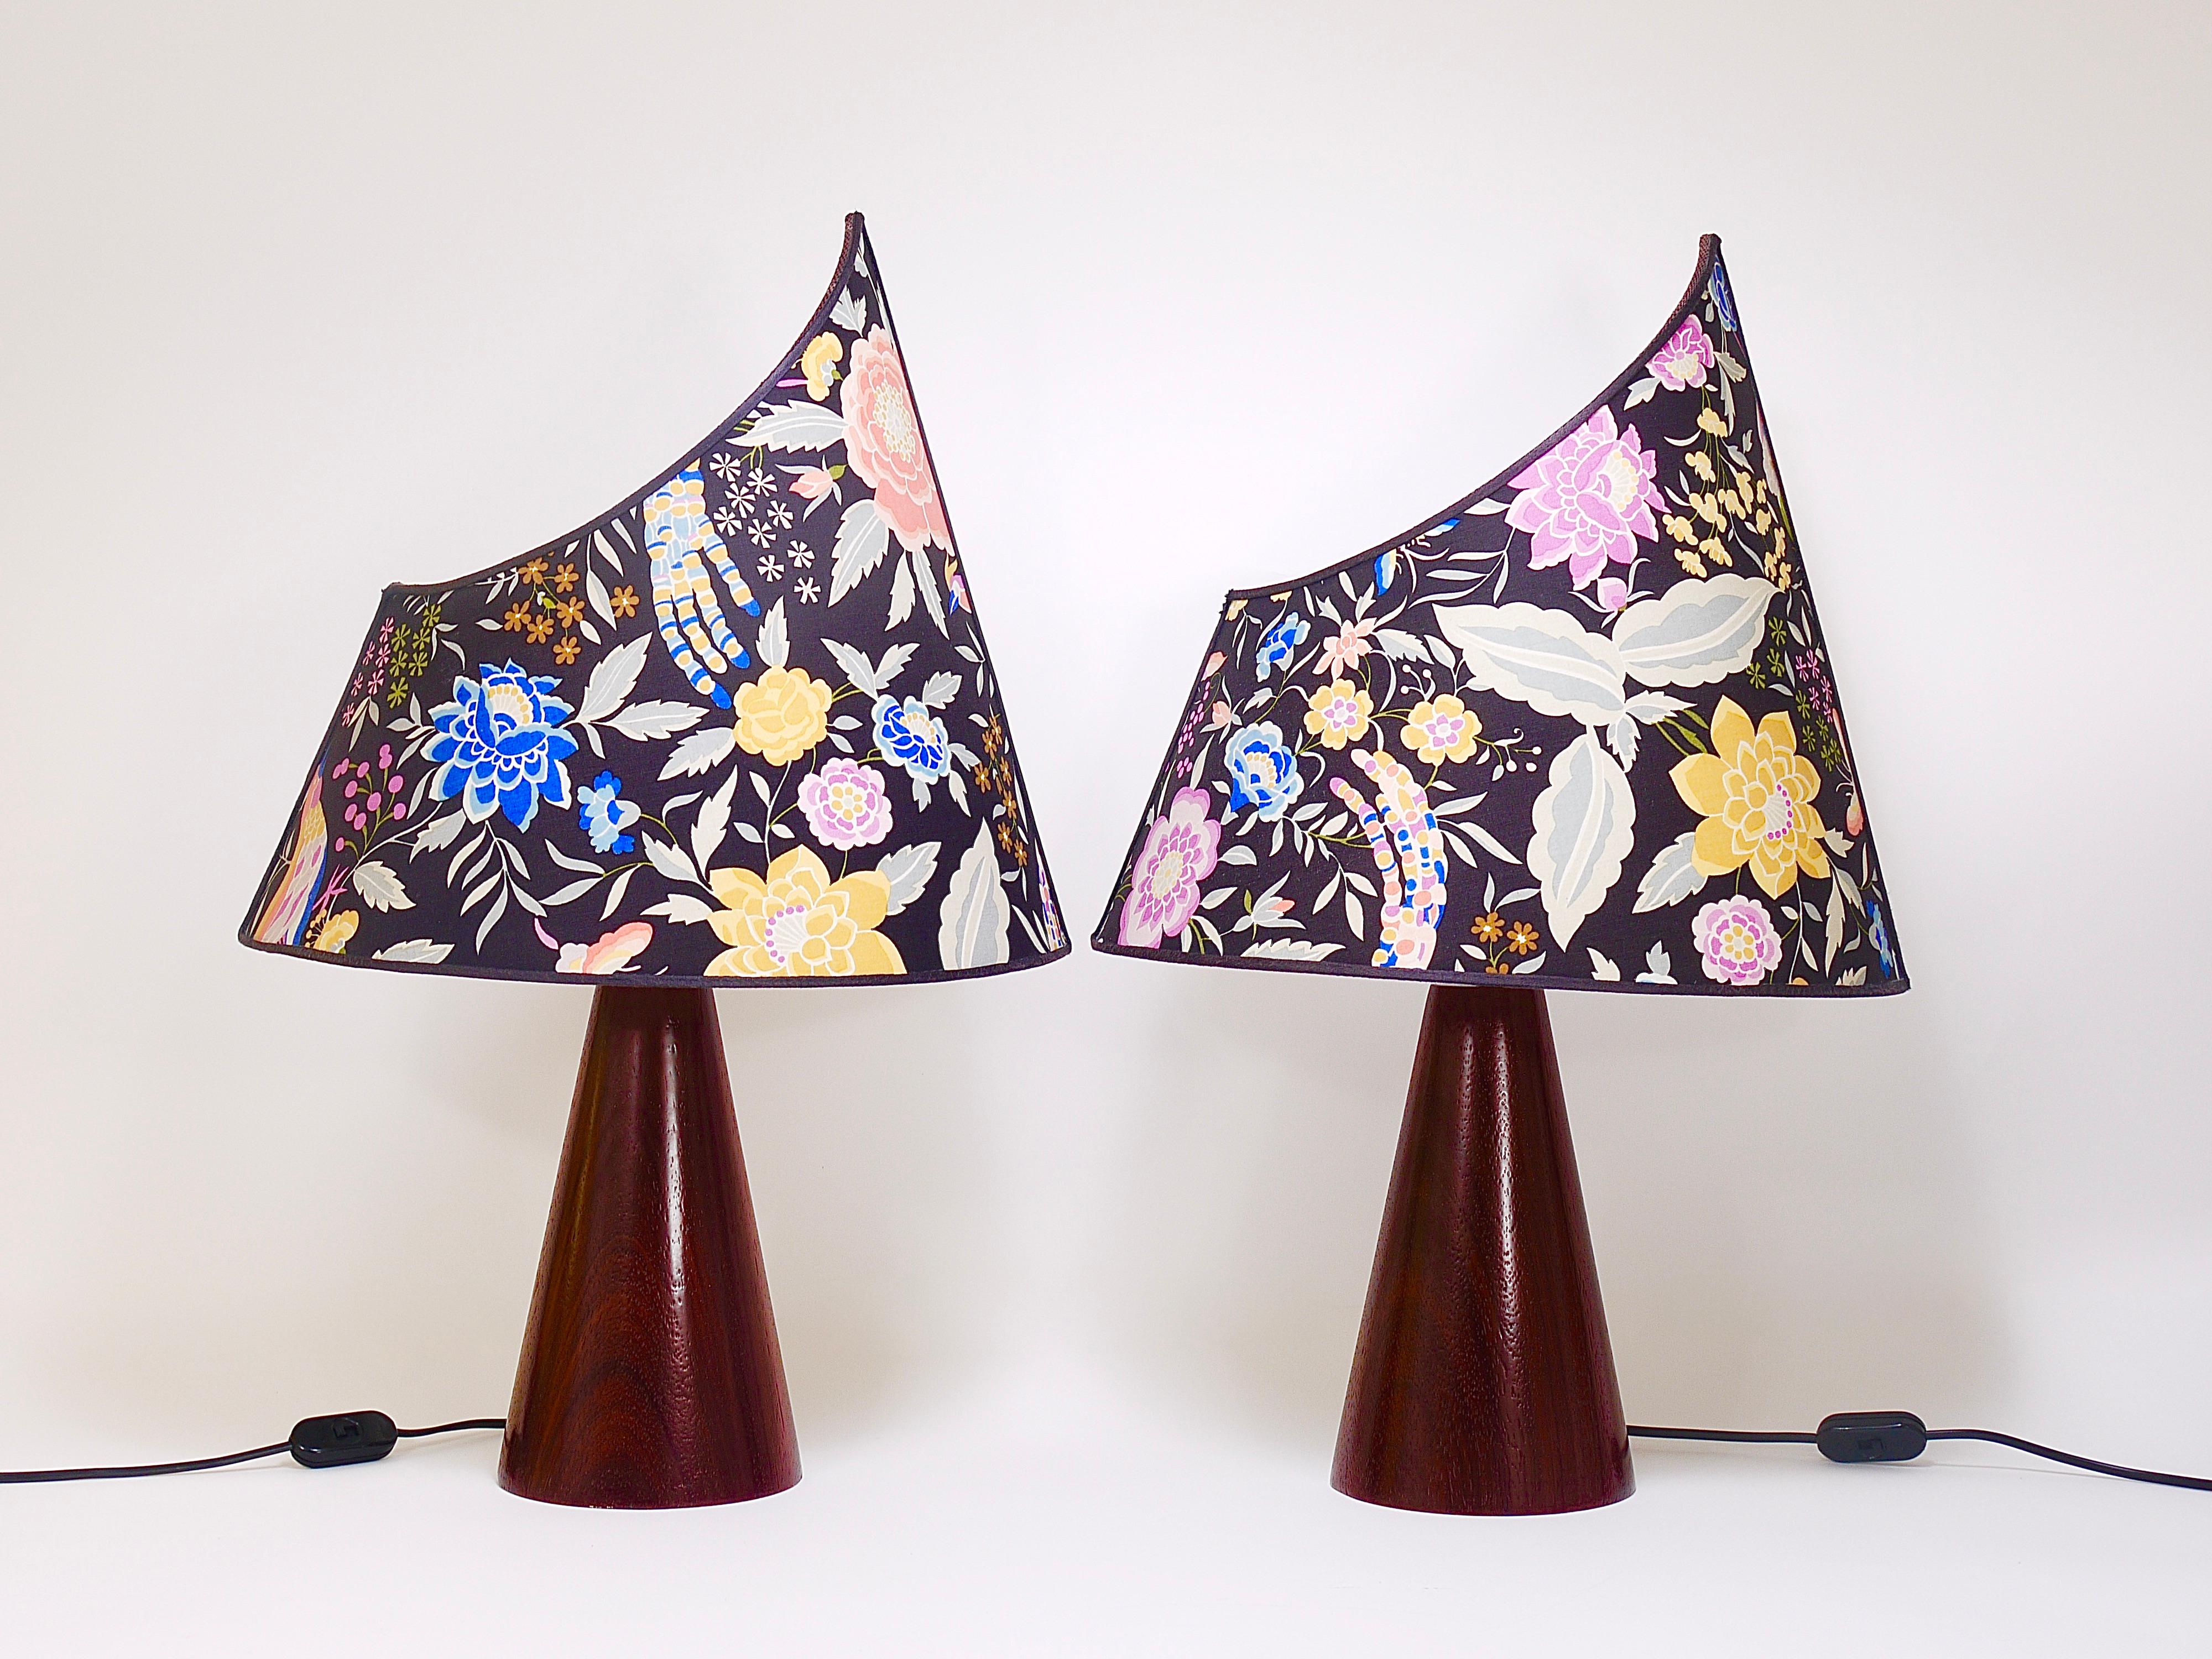 Une étonnante paire de lampes de table ou d'appoint postmodernes colorées Missoni, lampes de chevet des années 1980, conçues par Massimo Valloto. Cette lampe possède une base conique inhabituelle en bois foncé et un abat-jour asymétrique en forme de